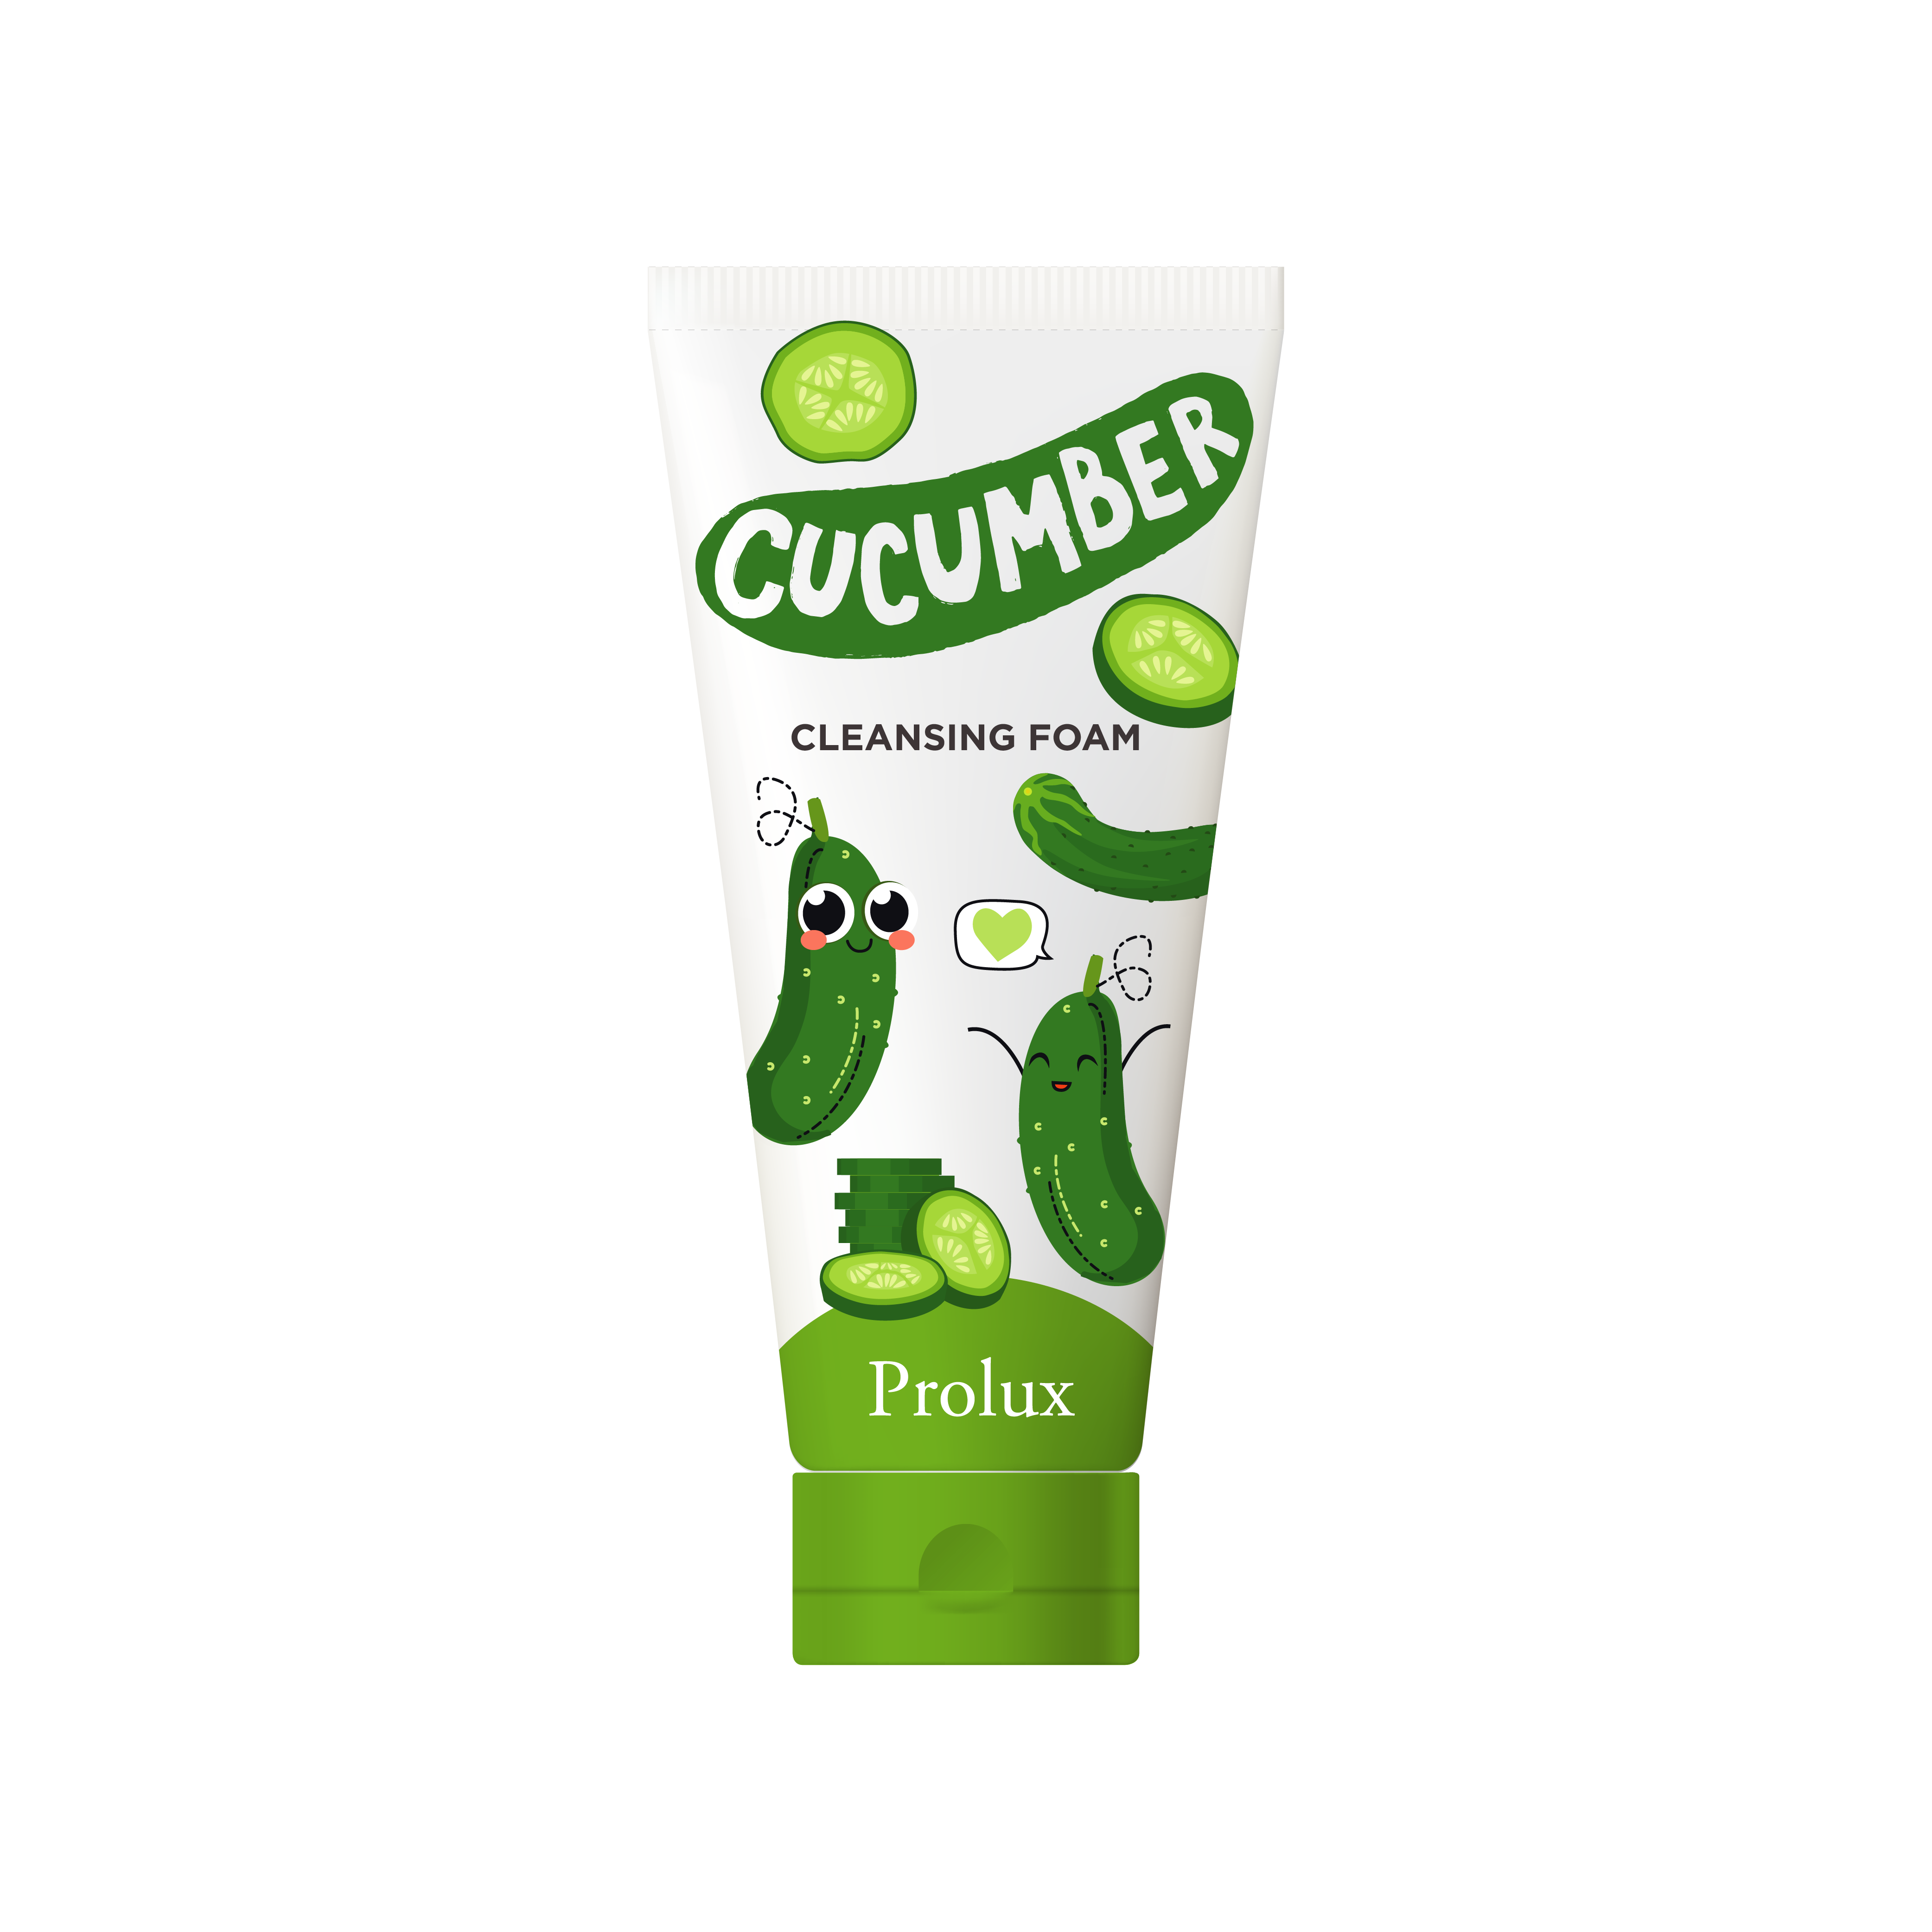 Prolux Cleansing Foam cucumber